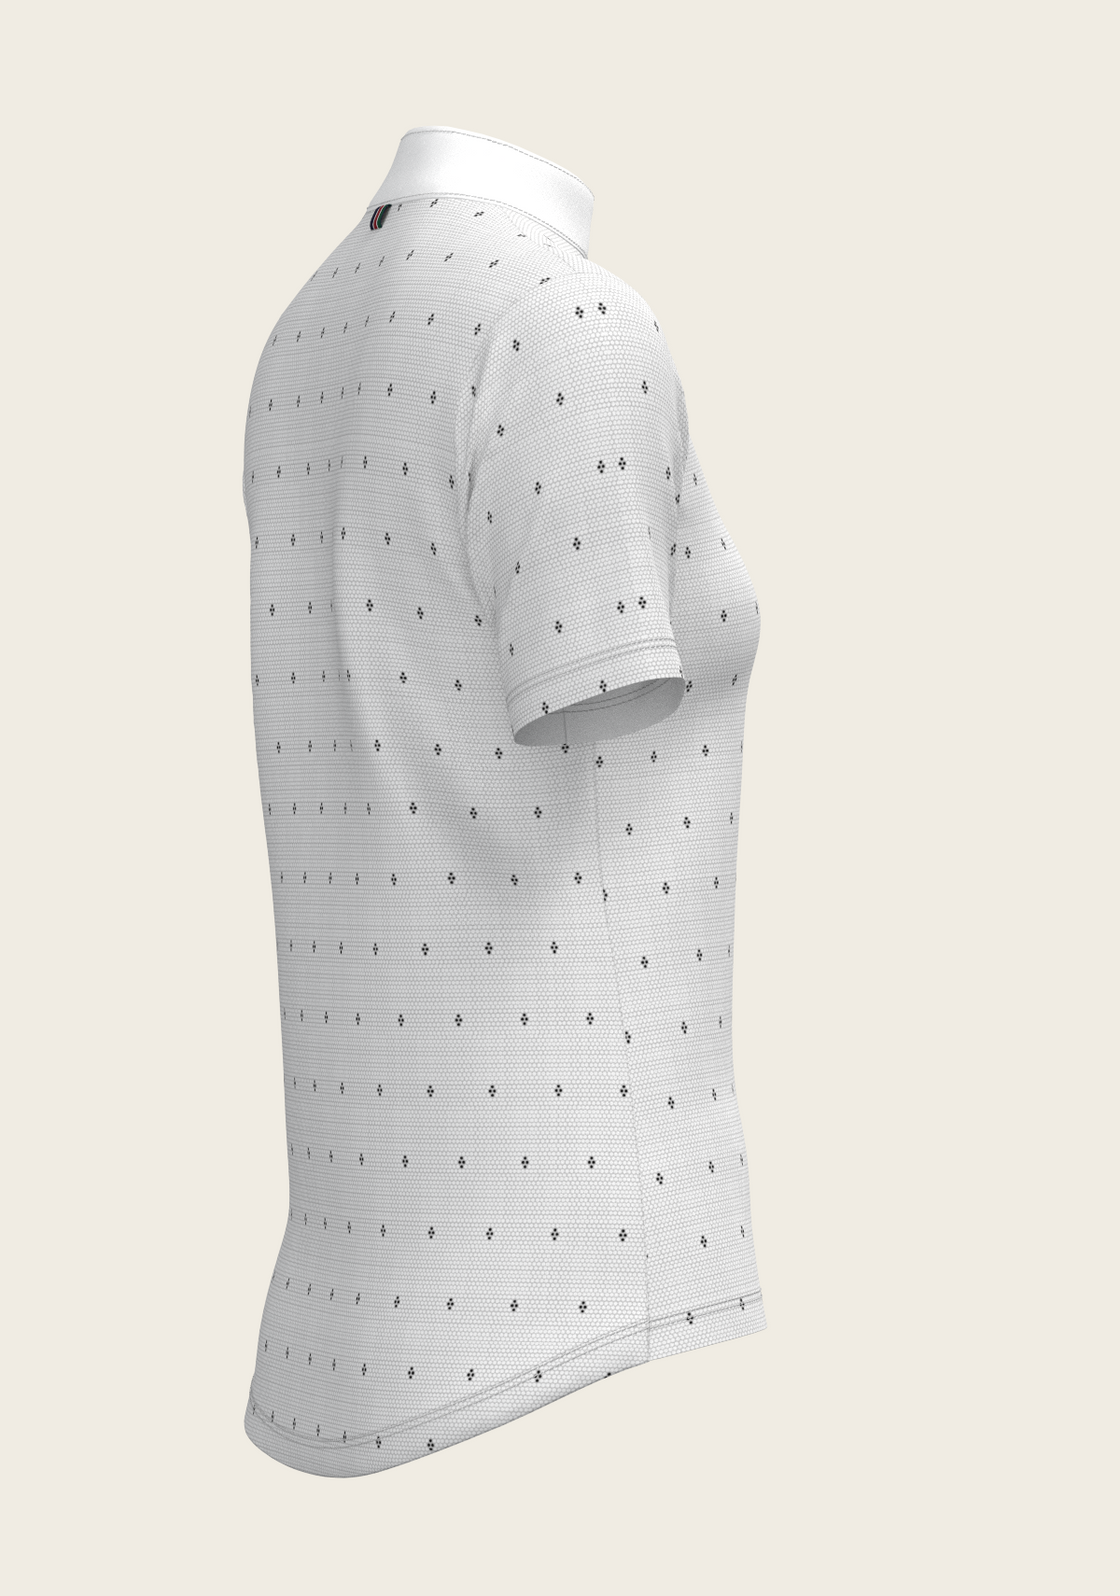 Mosaic 4 Dot Quarter Zip Short Sleeve Show Shirt